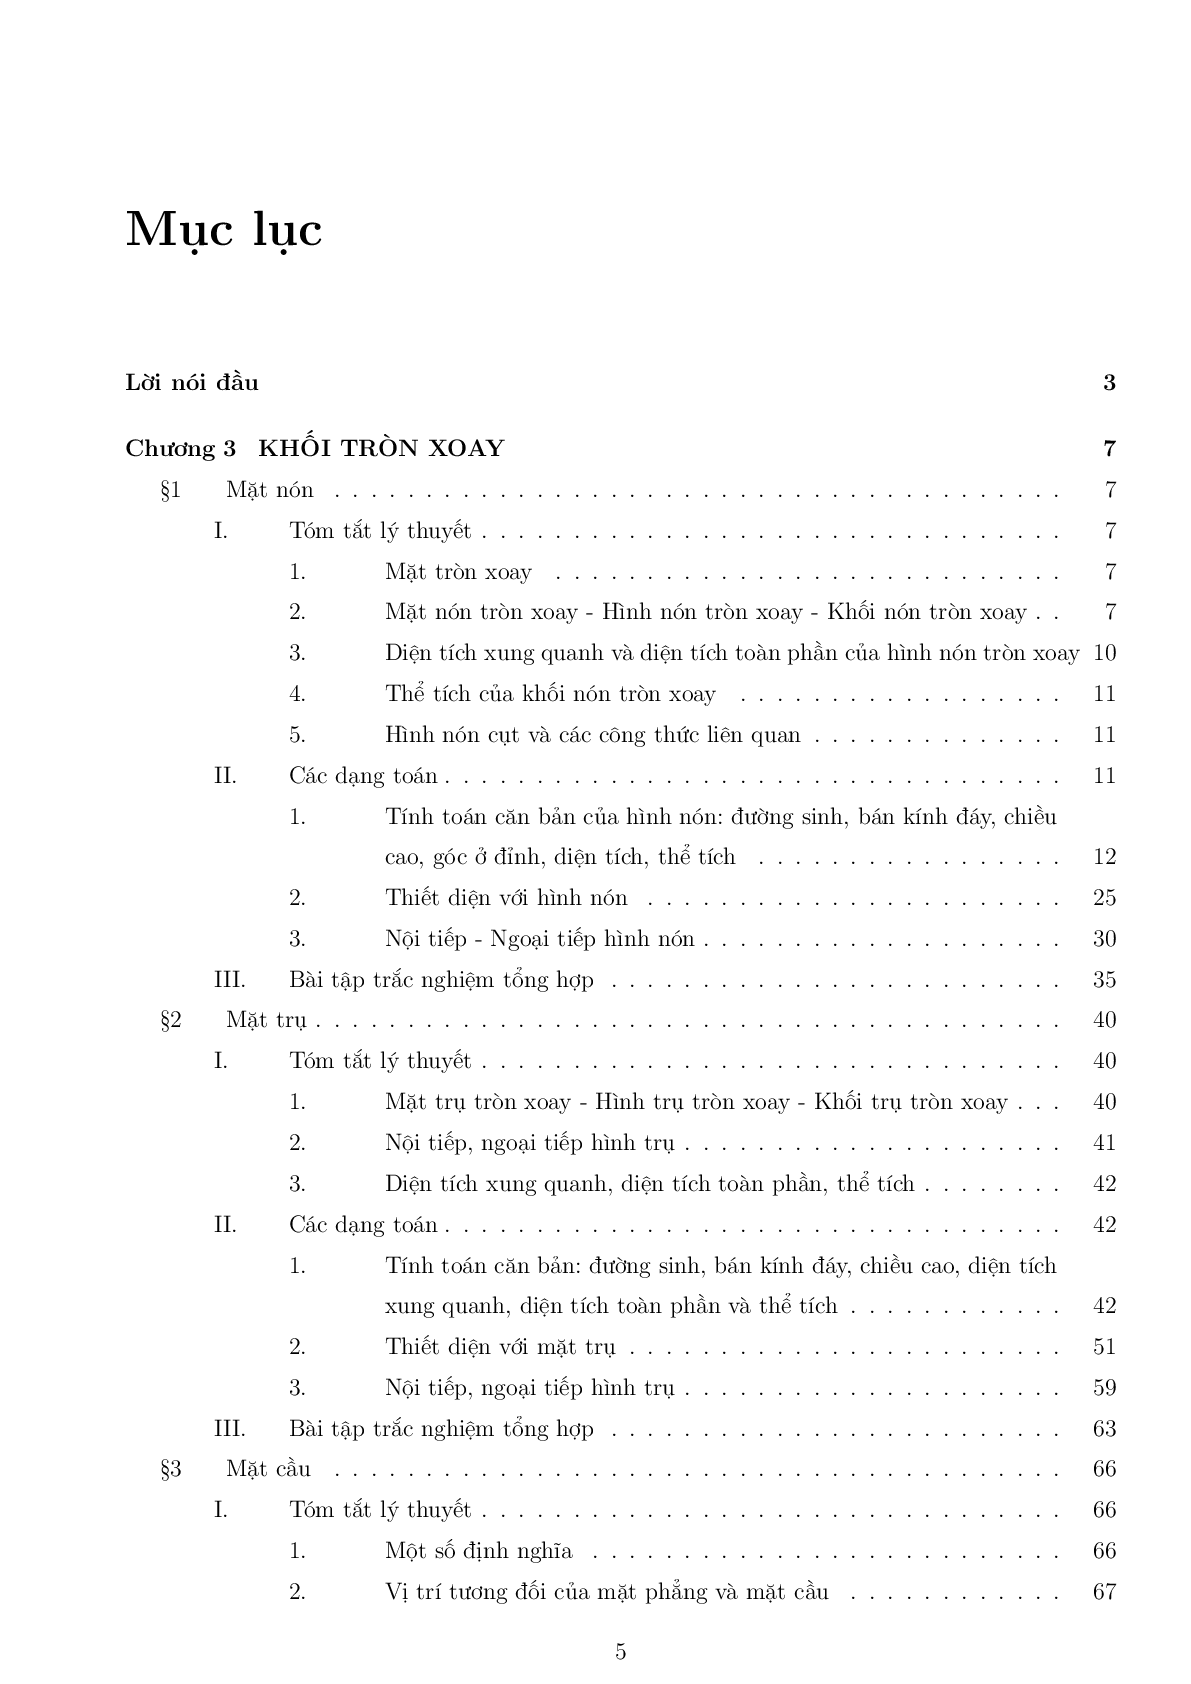 Bài tập trắc nghiệm hình học 12 chuyên đề nón - trụ -  cầu (trang 5)